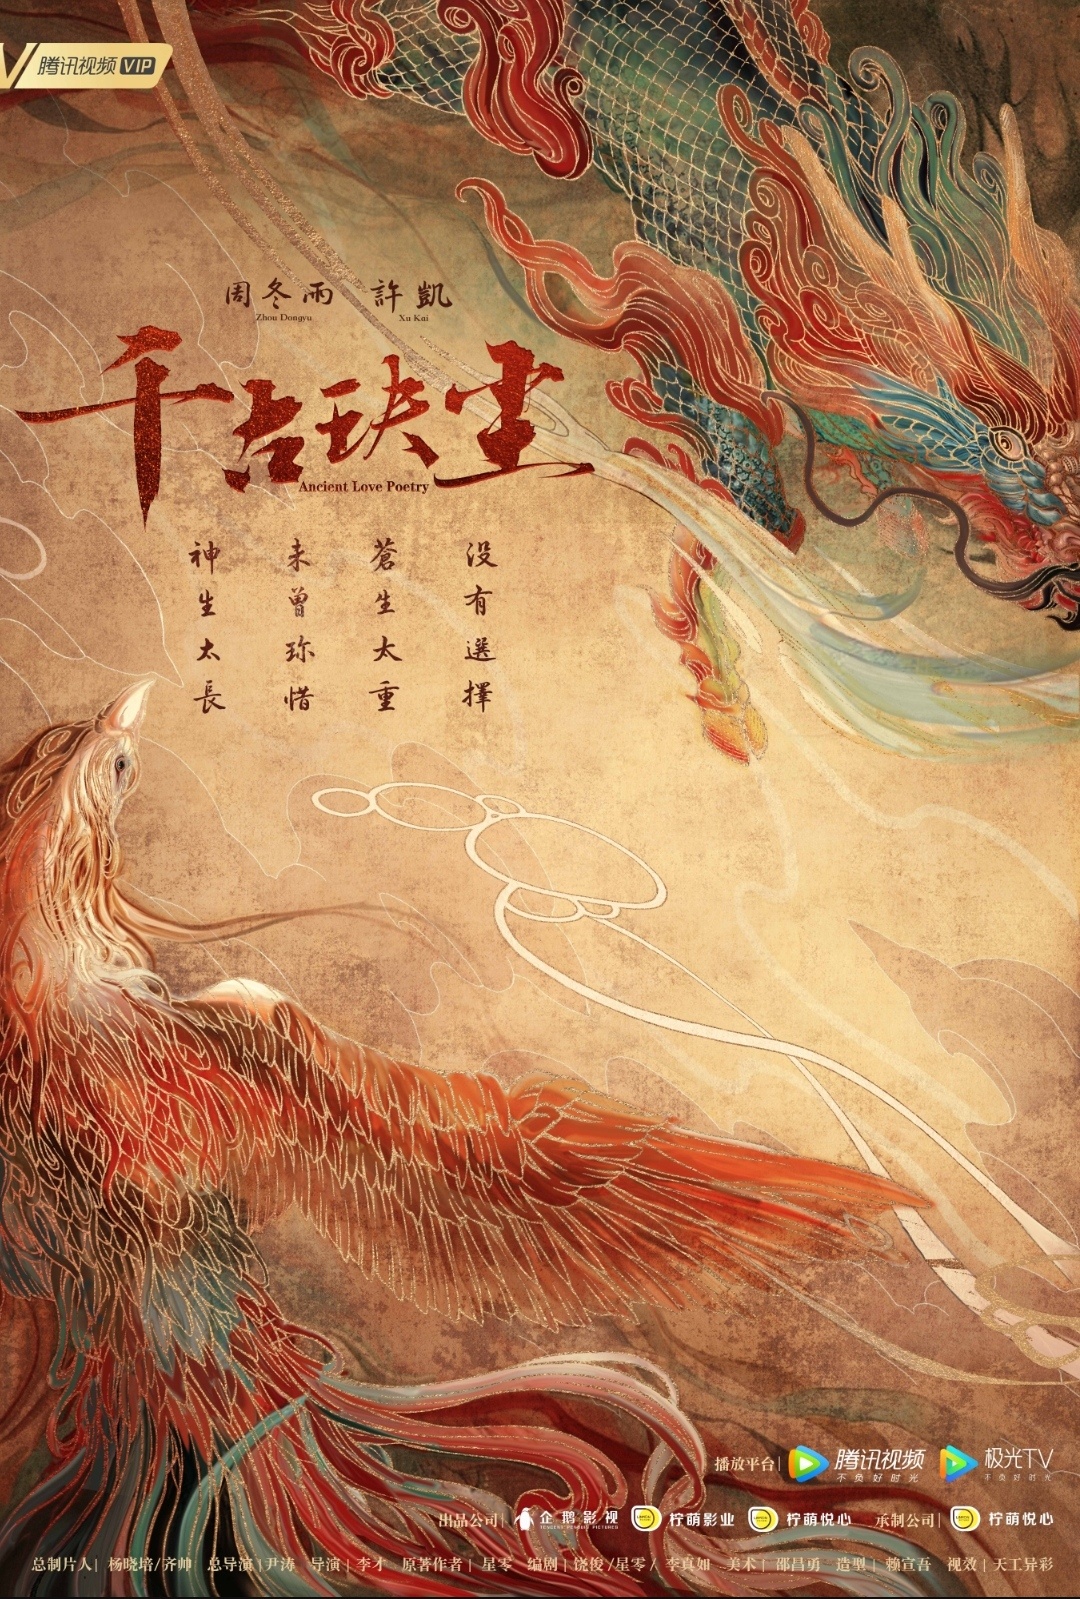 Zhou Dongyu, Xu Kai confirmed for Ancient Love Poetry